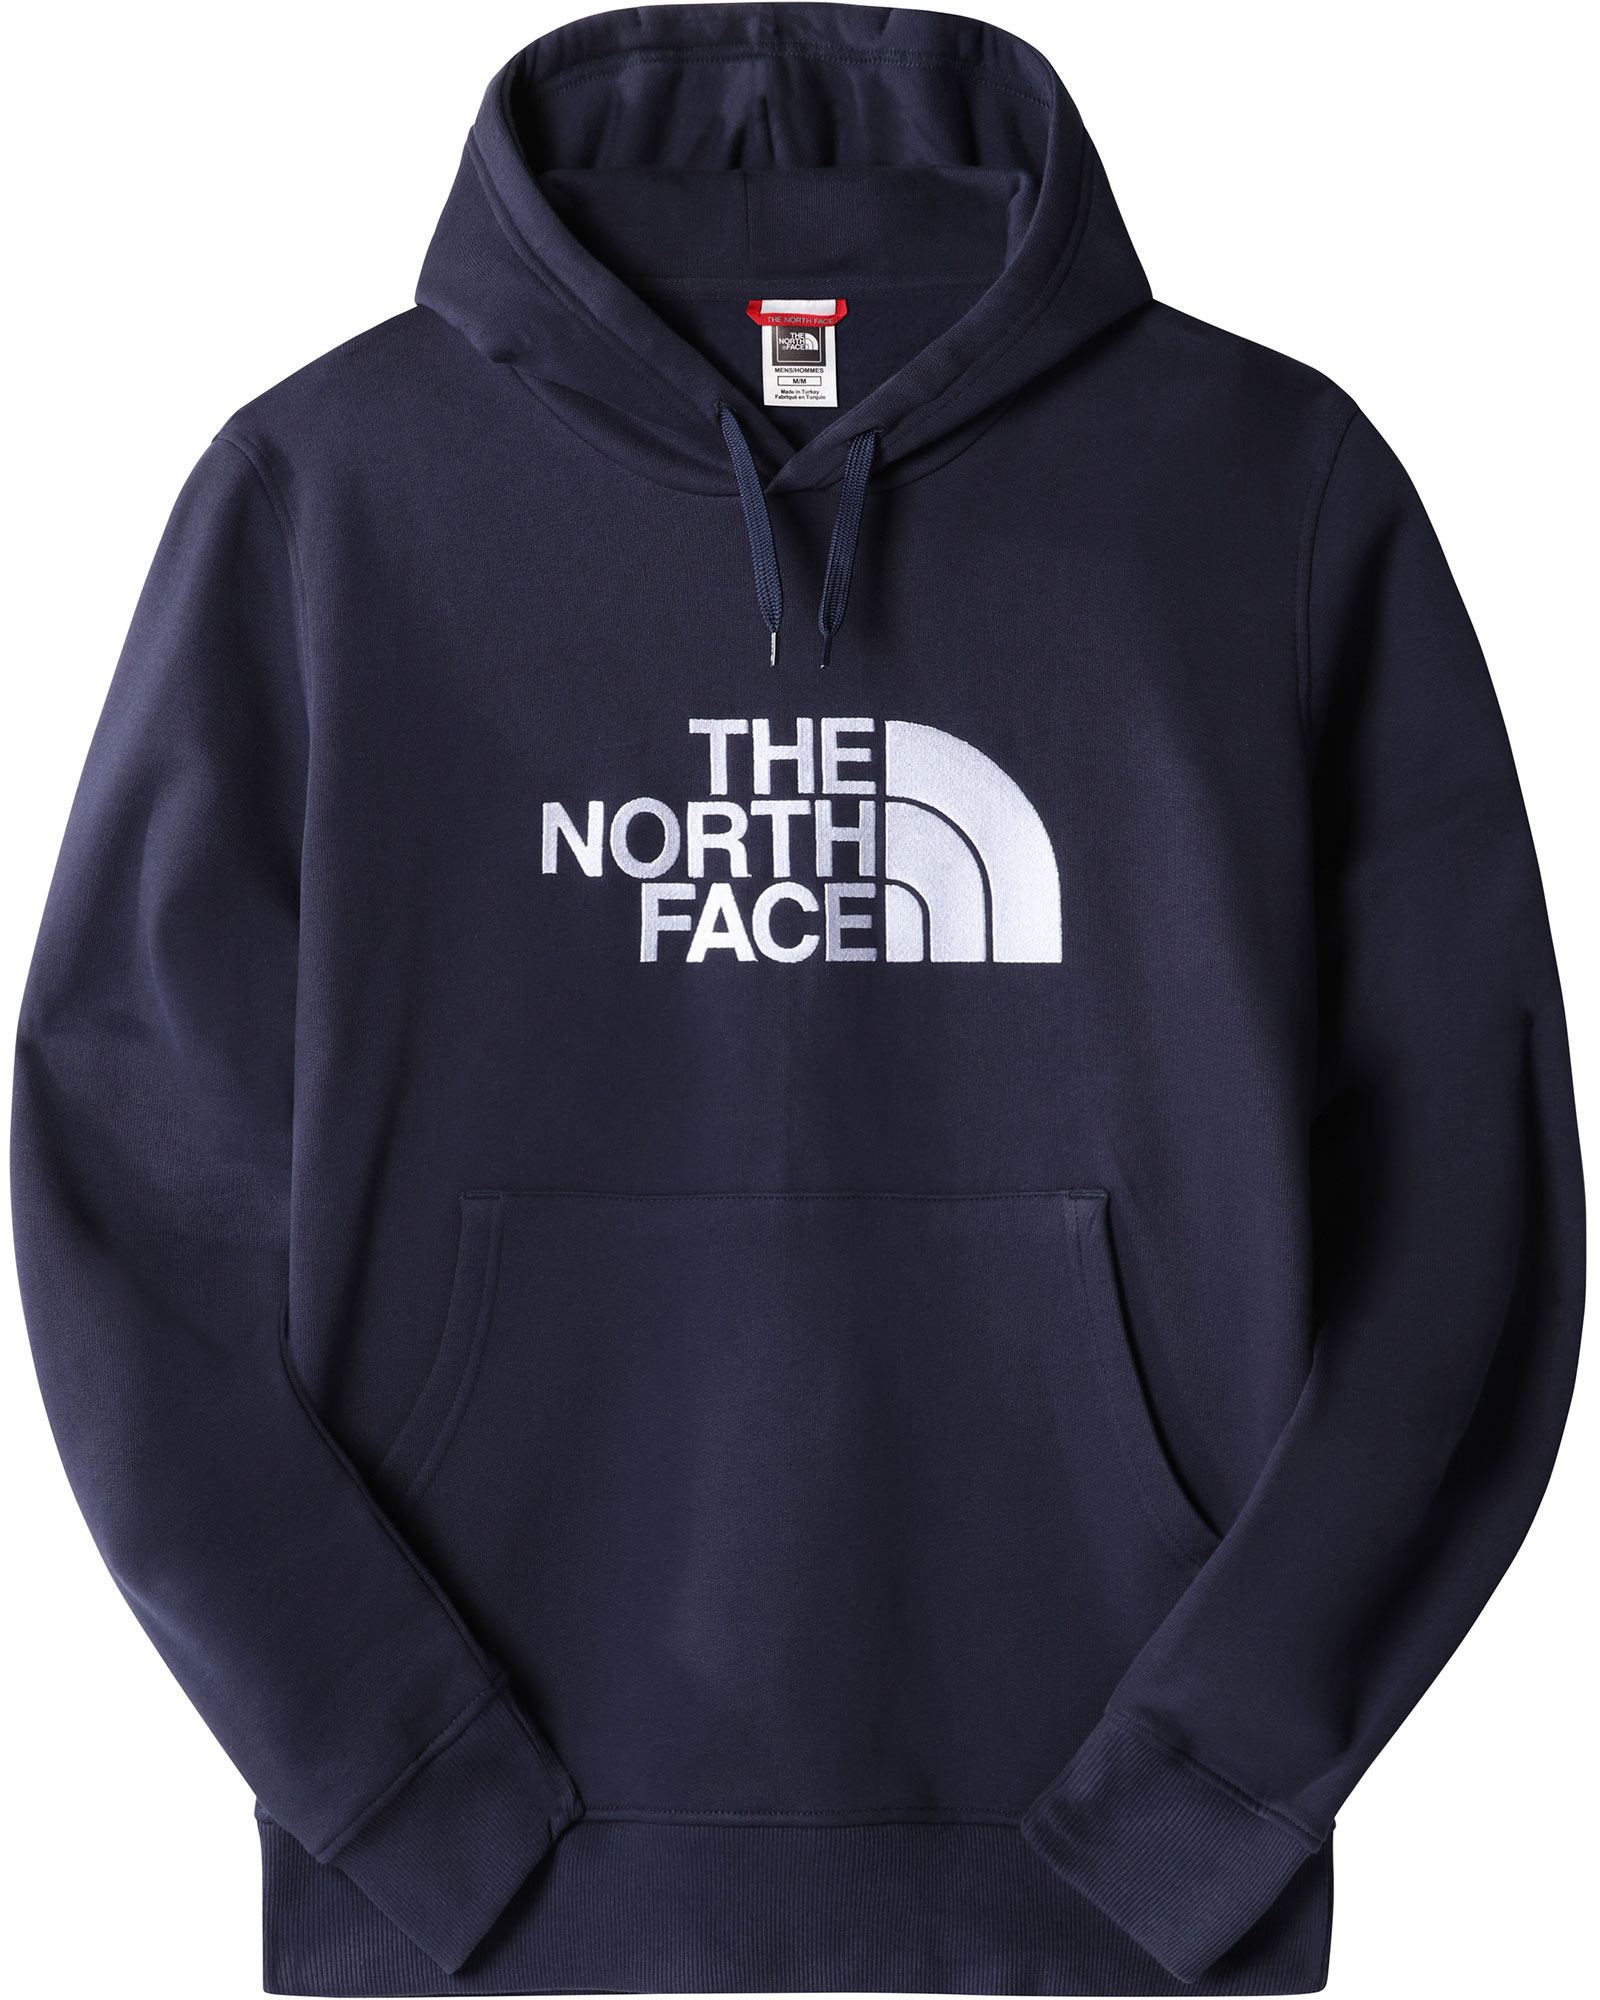 The North Face Drew Peak Men’s Hoodie - Summit Navy L